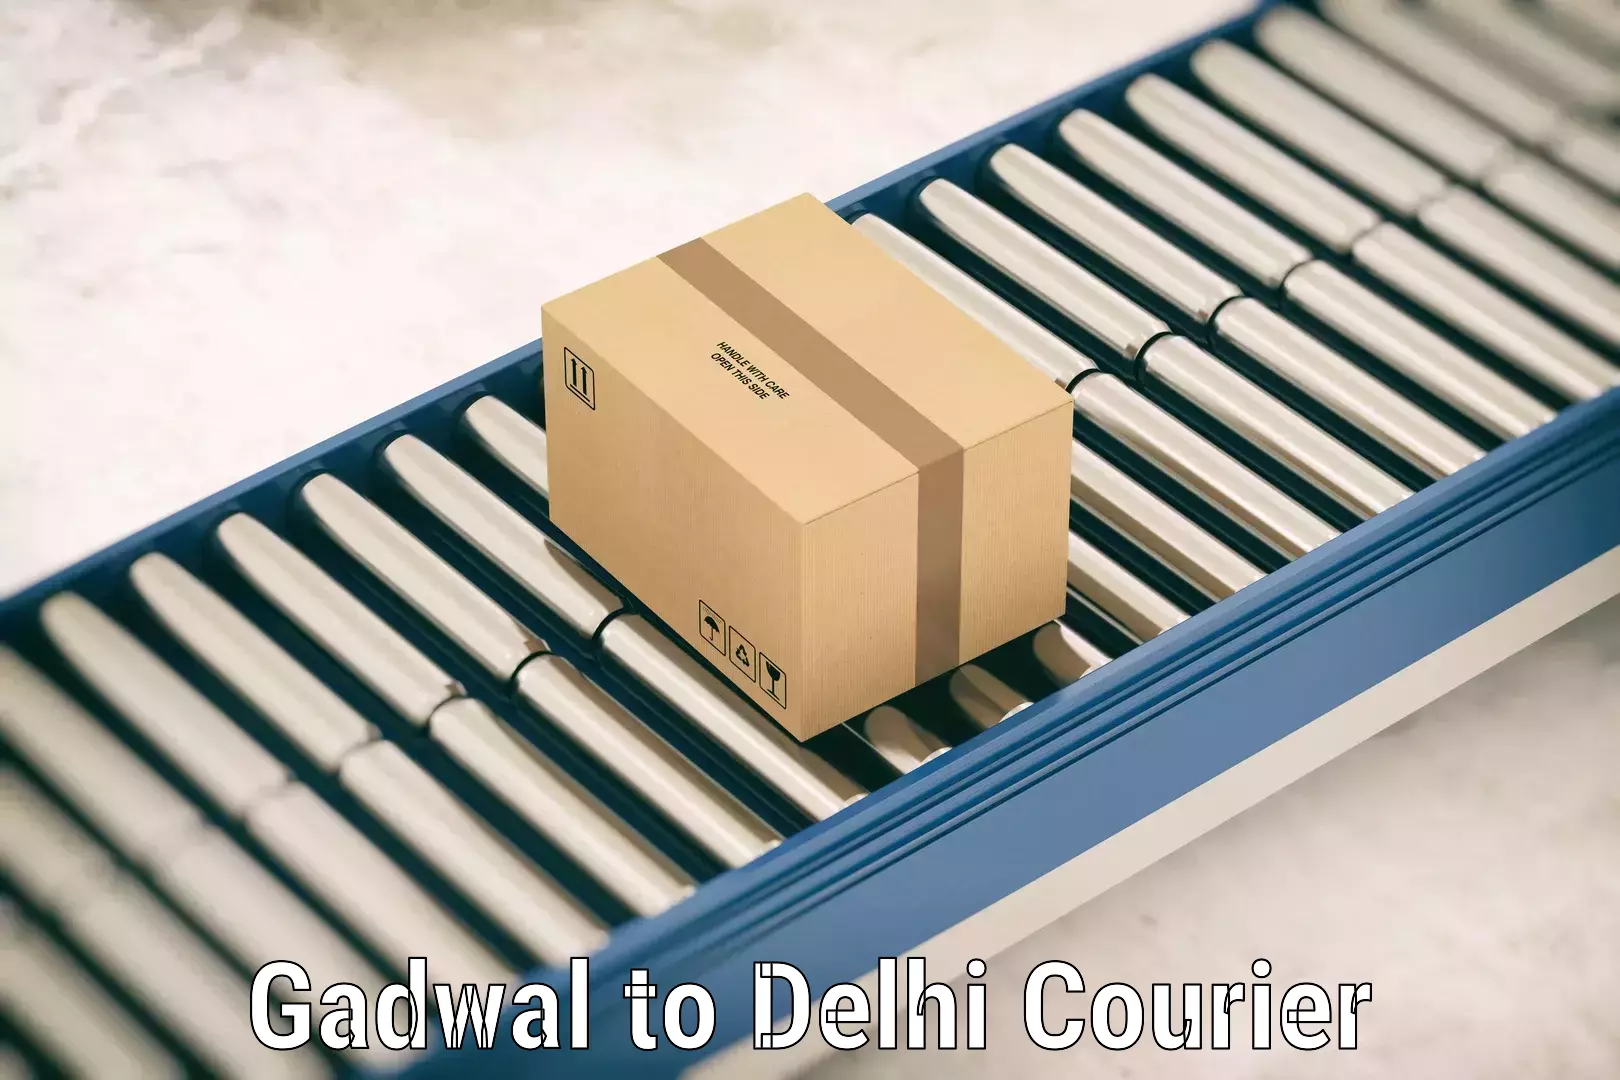 Luggage shipment tracking Gadwal to Delhi